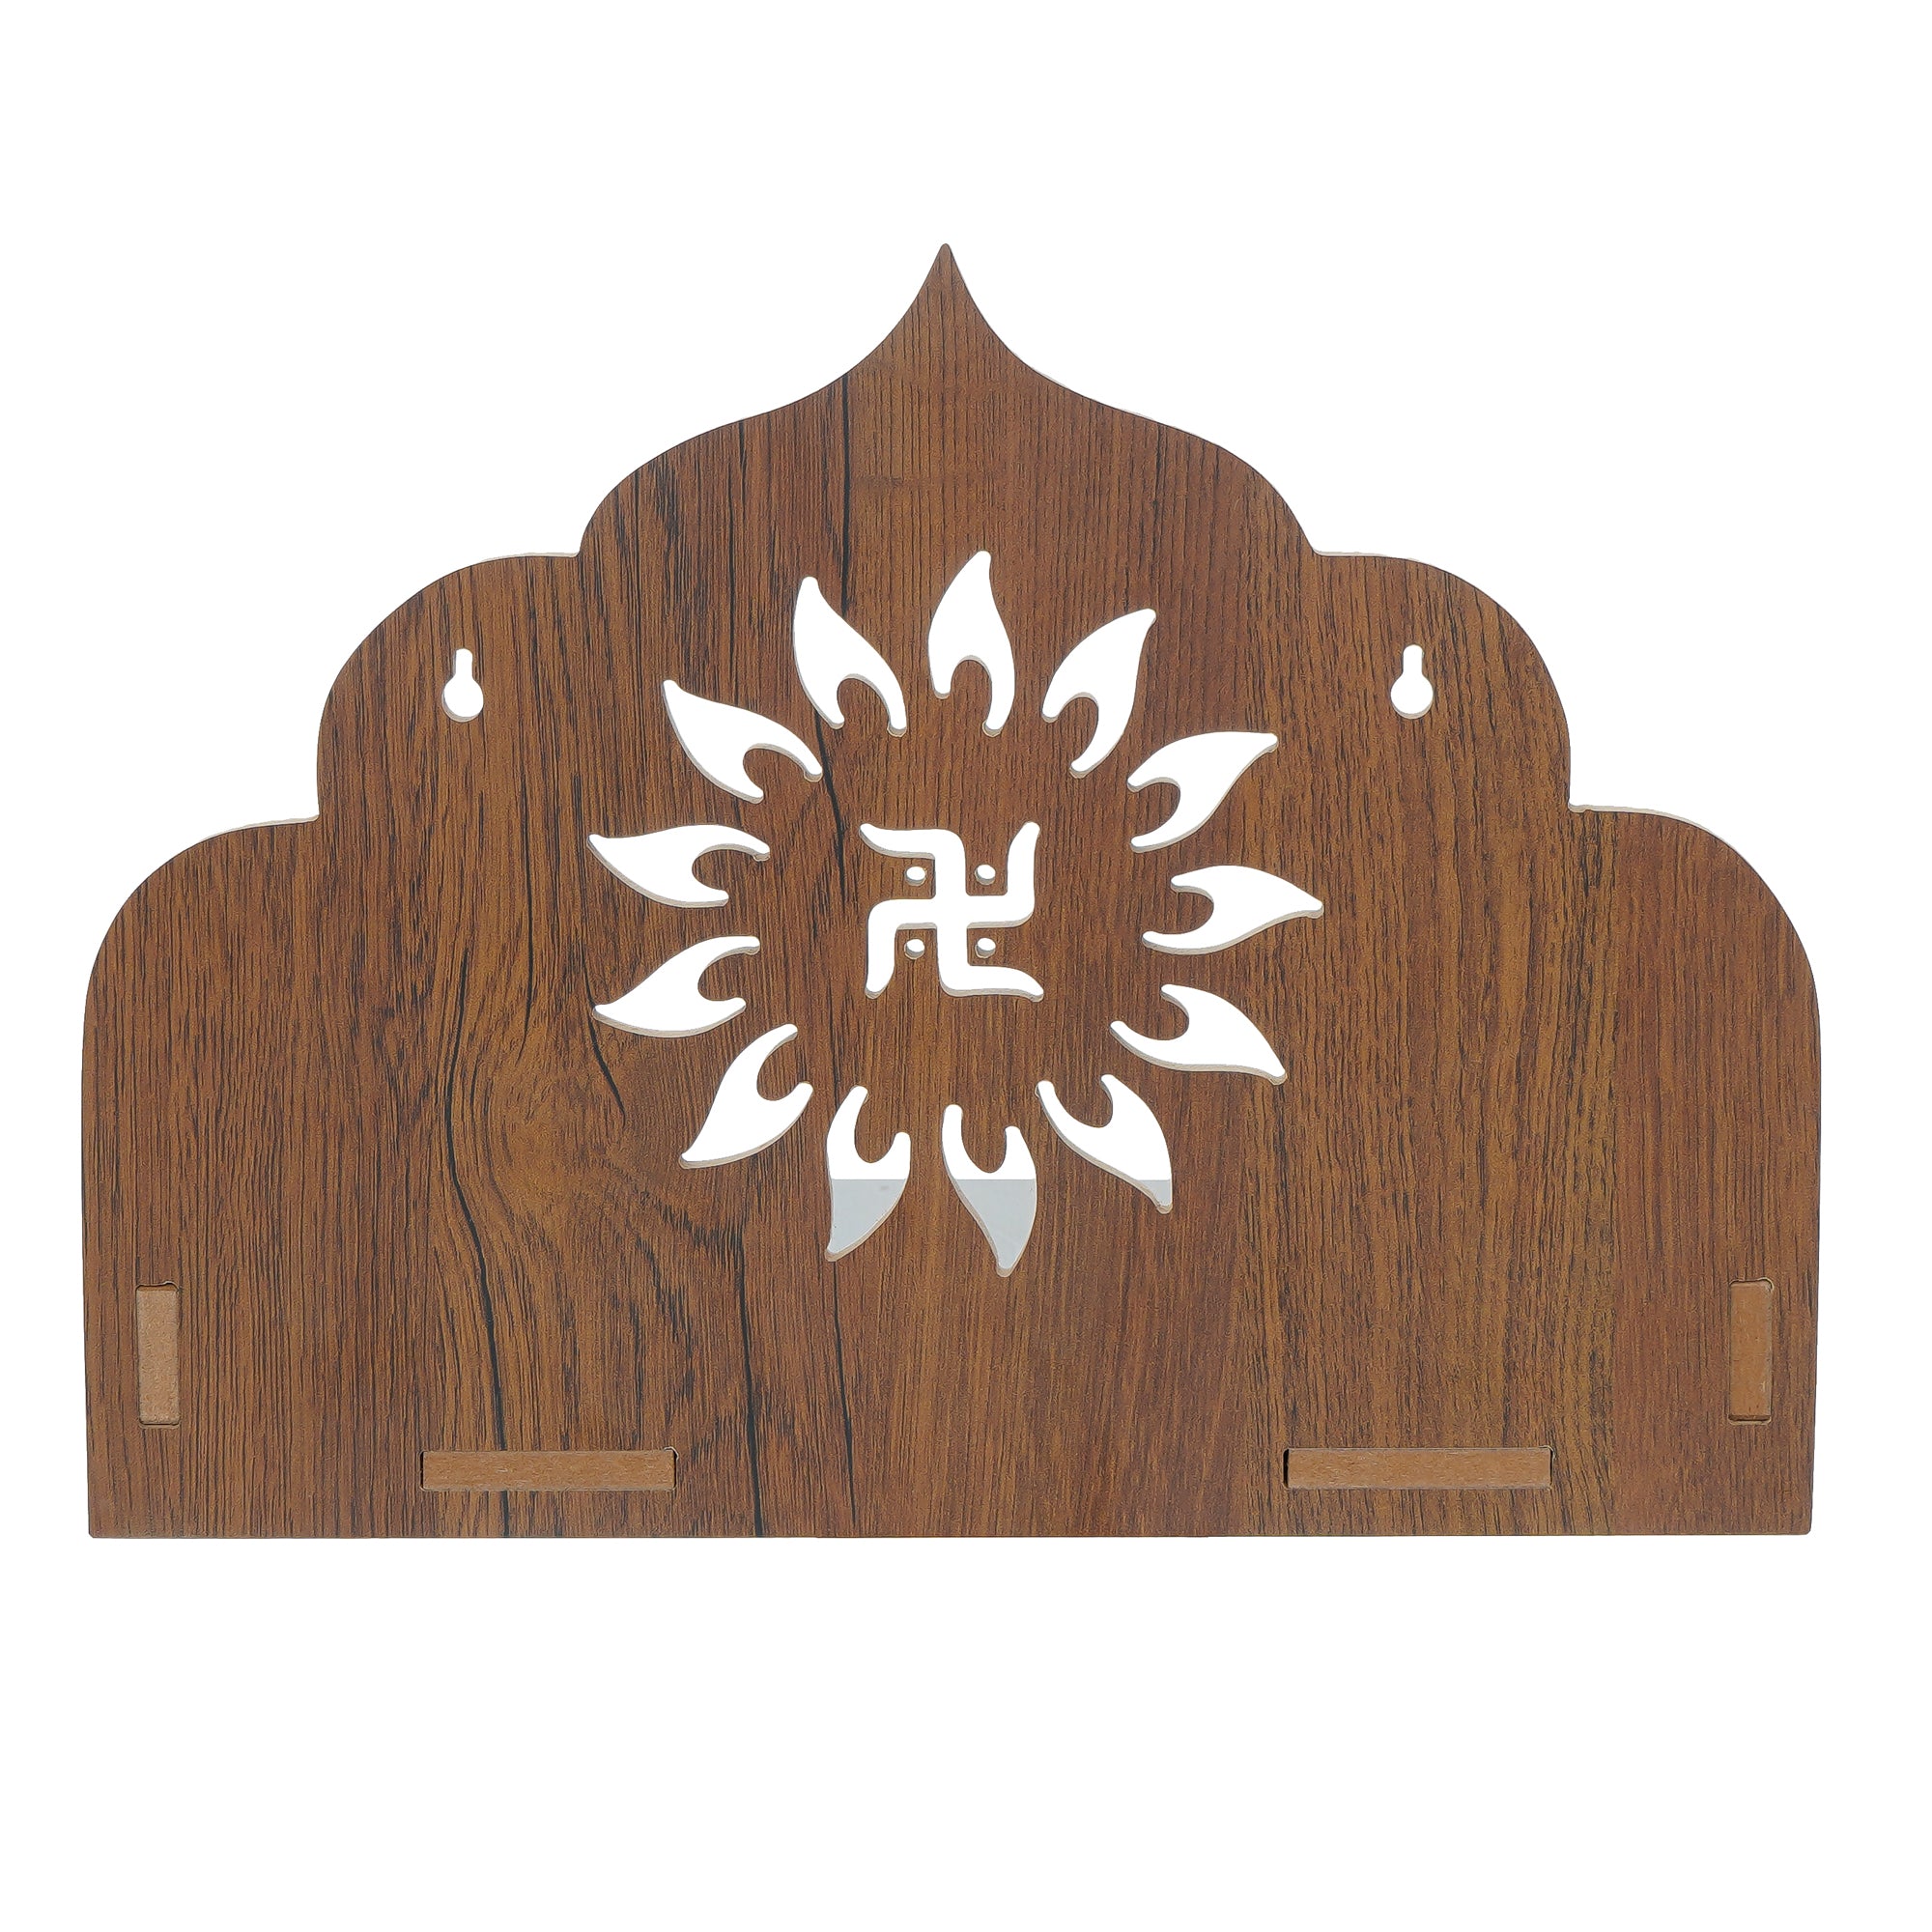 Swastik Design Laminated Wood Pooja Temple/Mandir 6